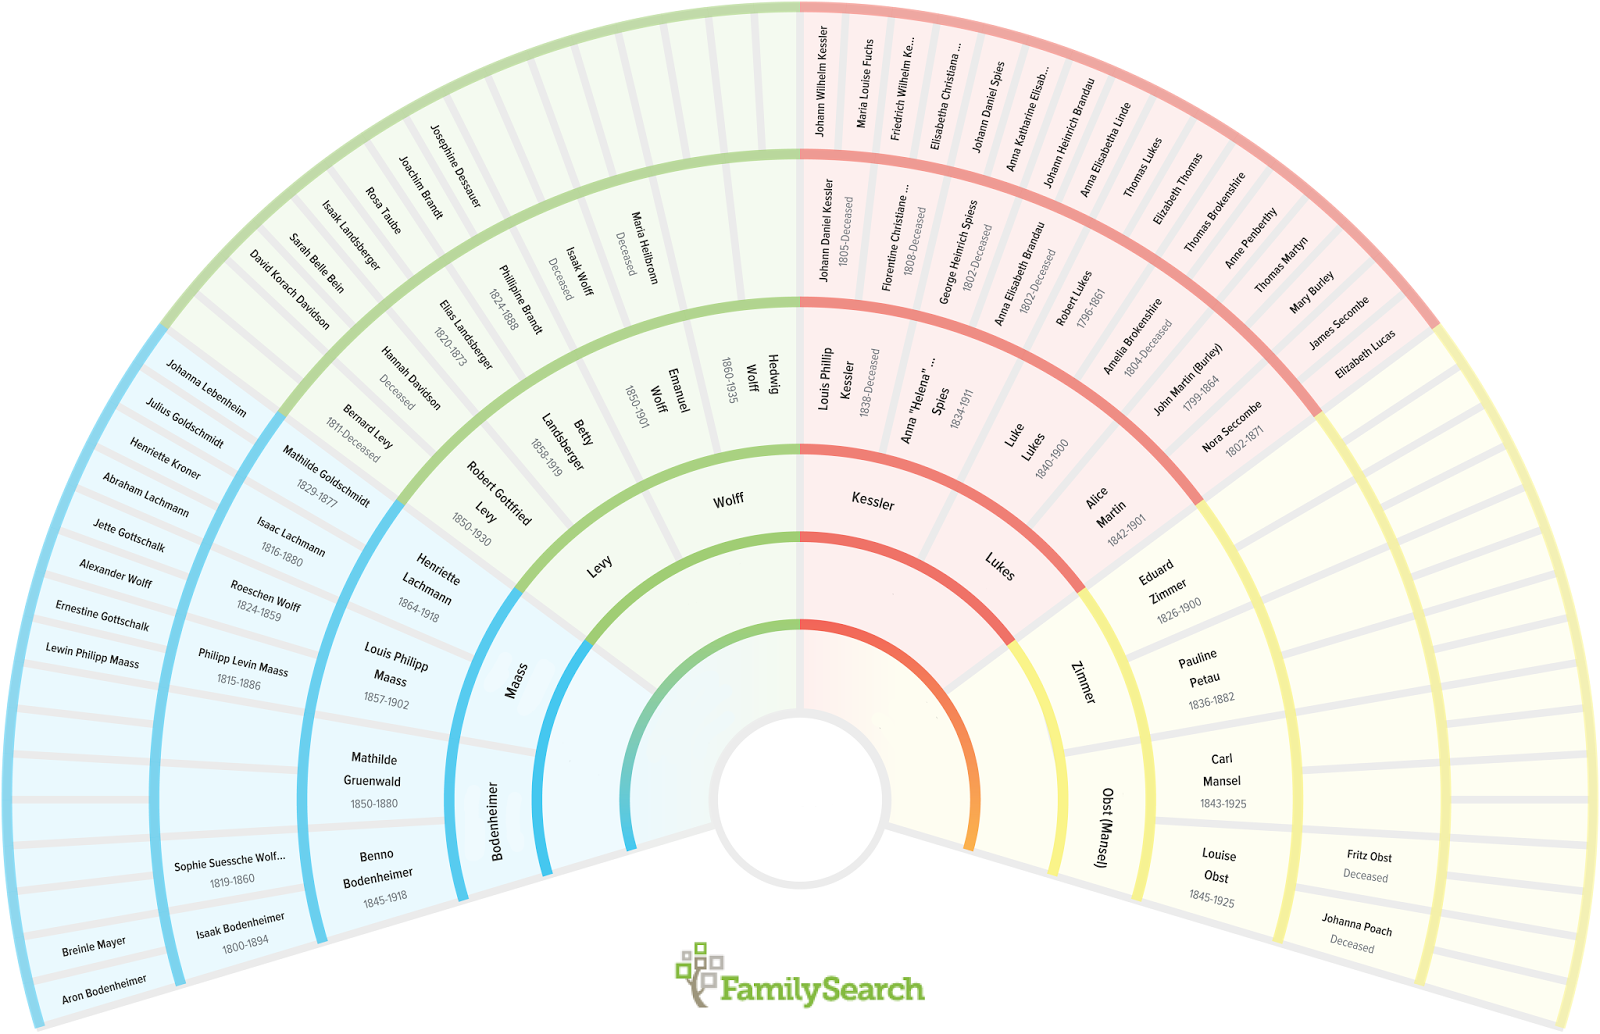 Familysearch Fan Chart